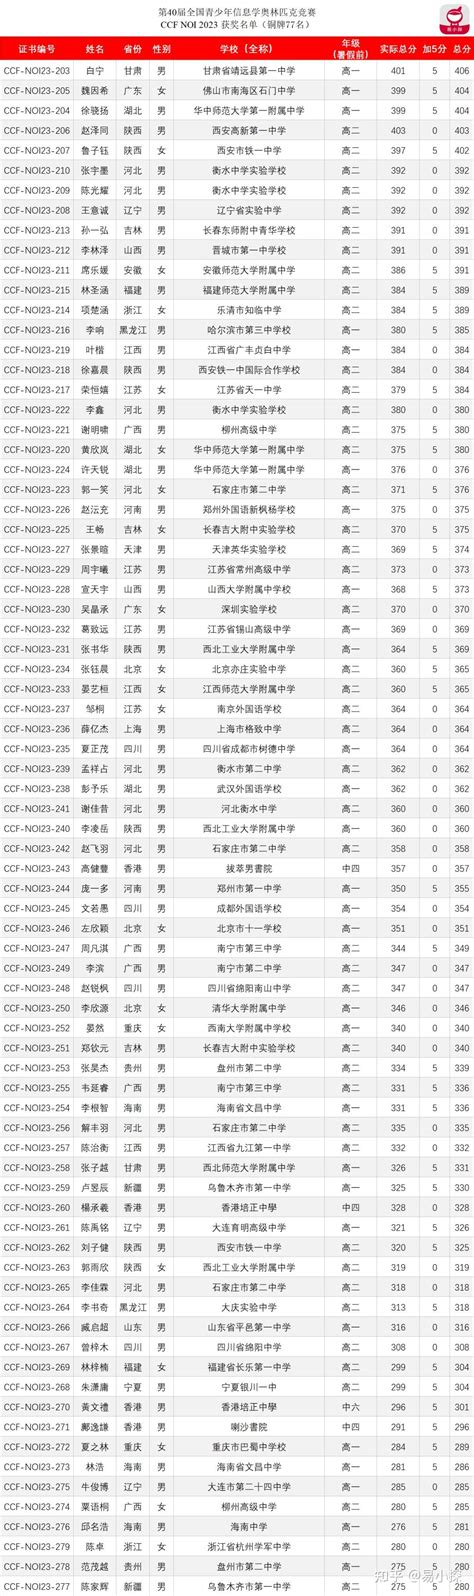 体育数据分析公司预测奥运：中国代表团奖牌榜第三&金牌数第二 - 知乎